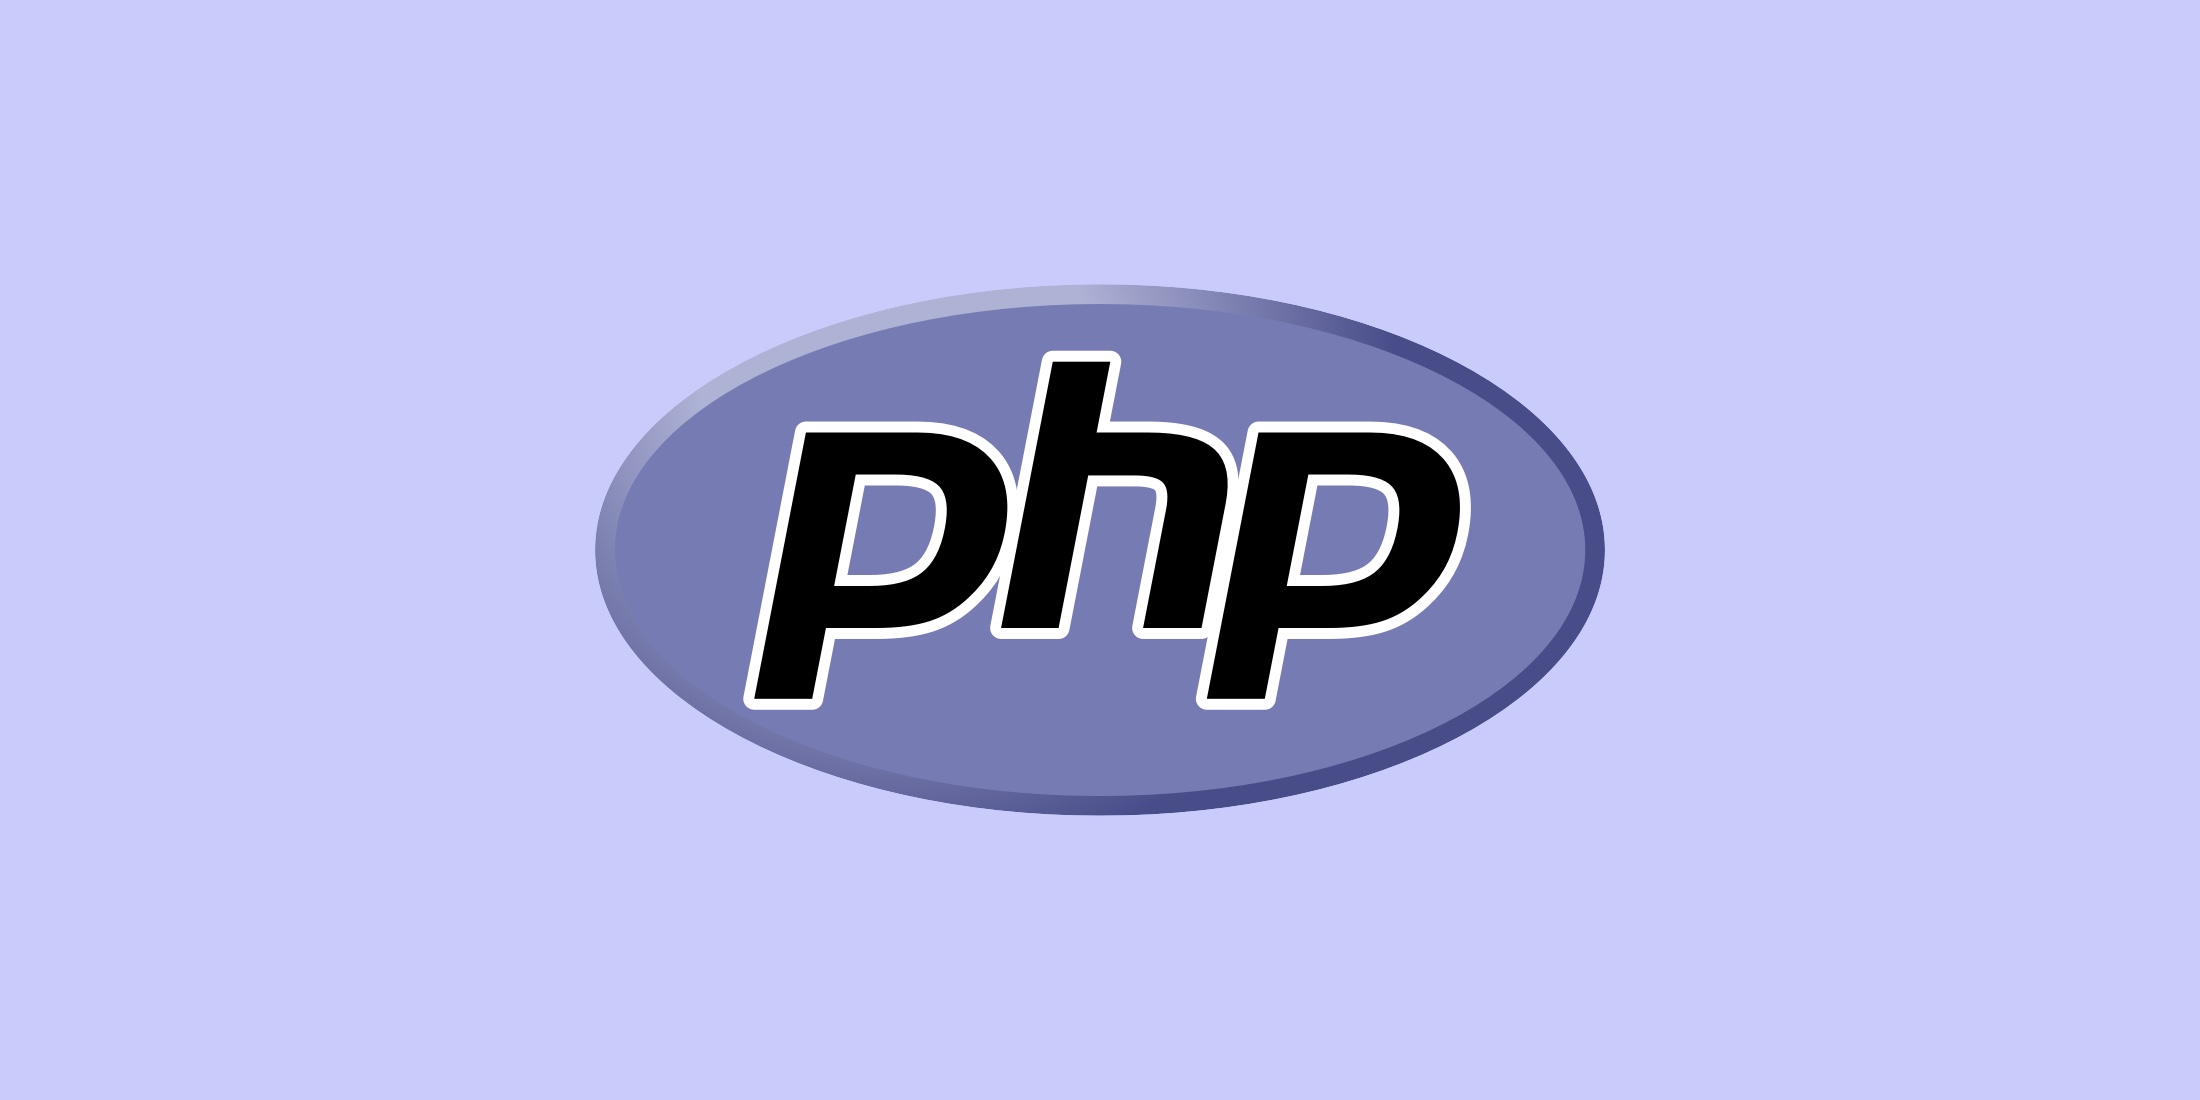 srishti campus PHP Full Stack Course trivandrum